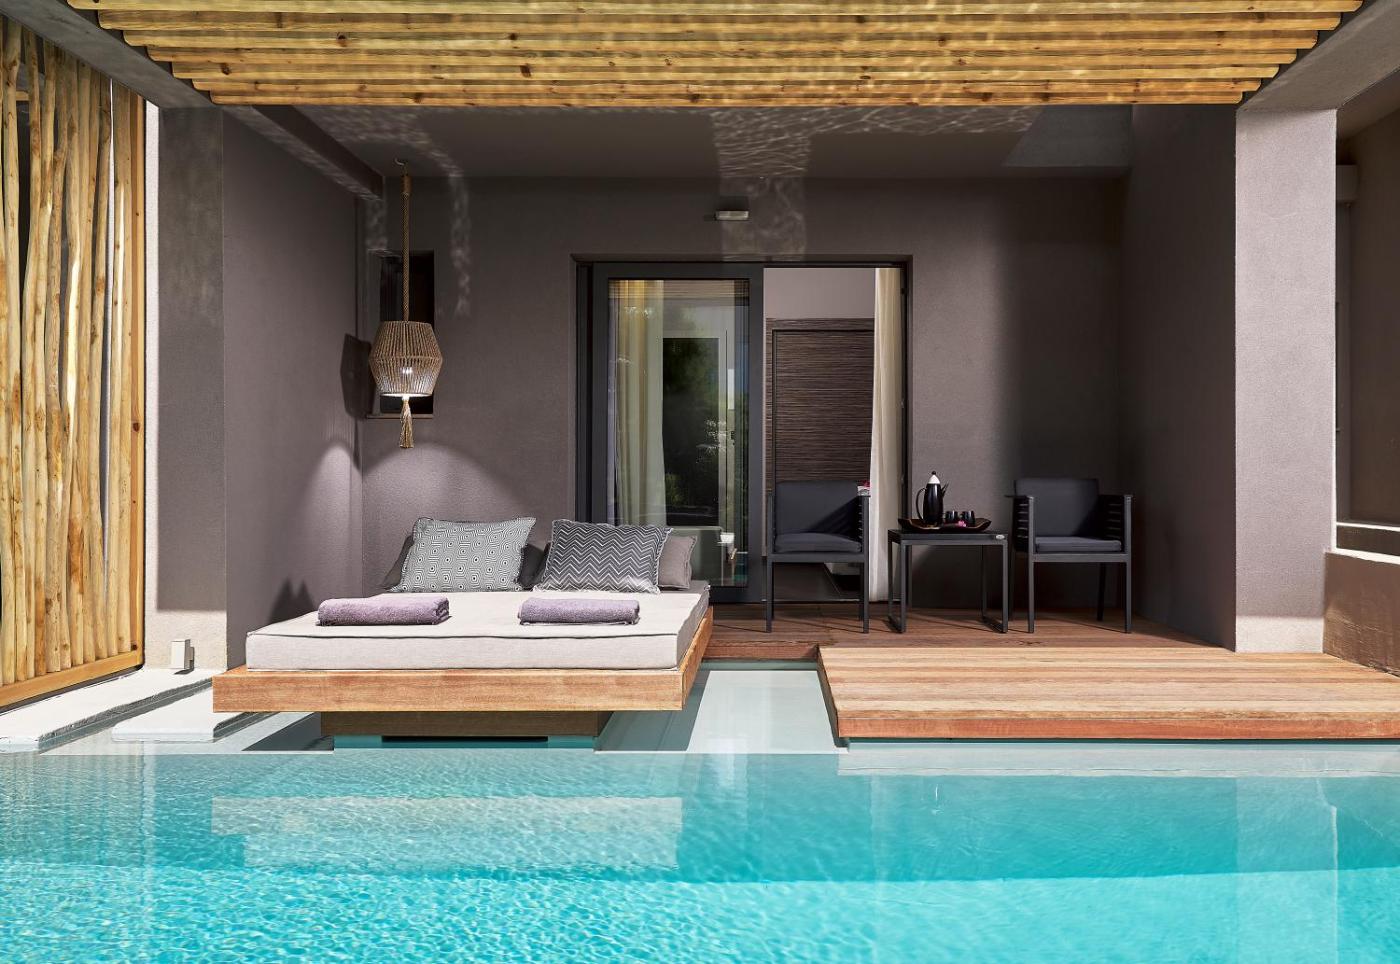 Hotel with private pool - NEMA Design Hotel & Spa